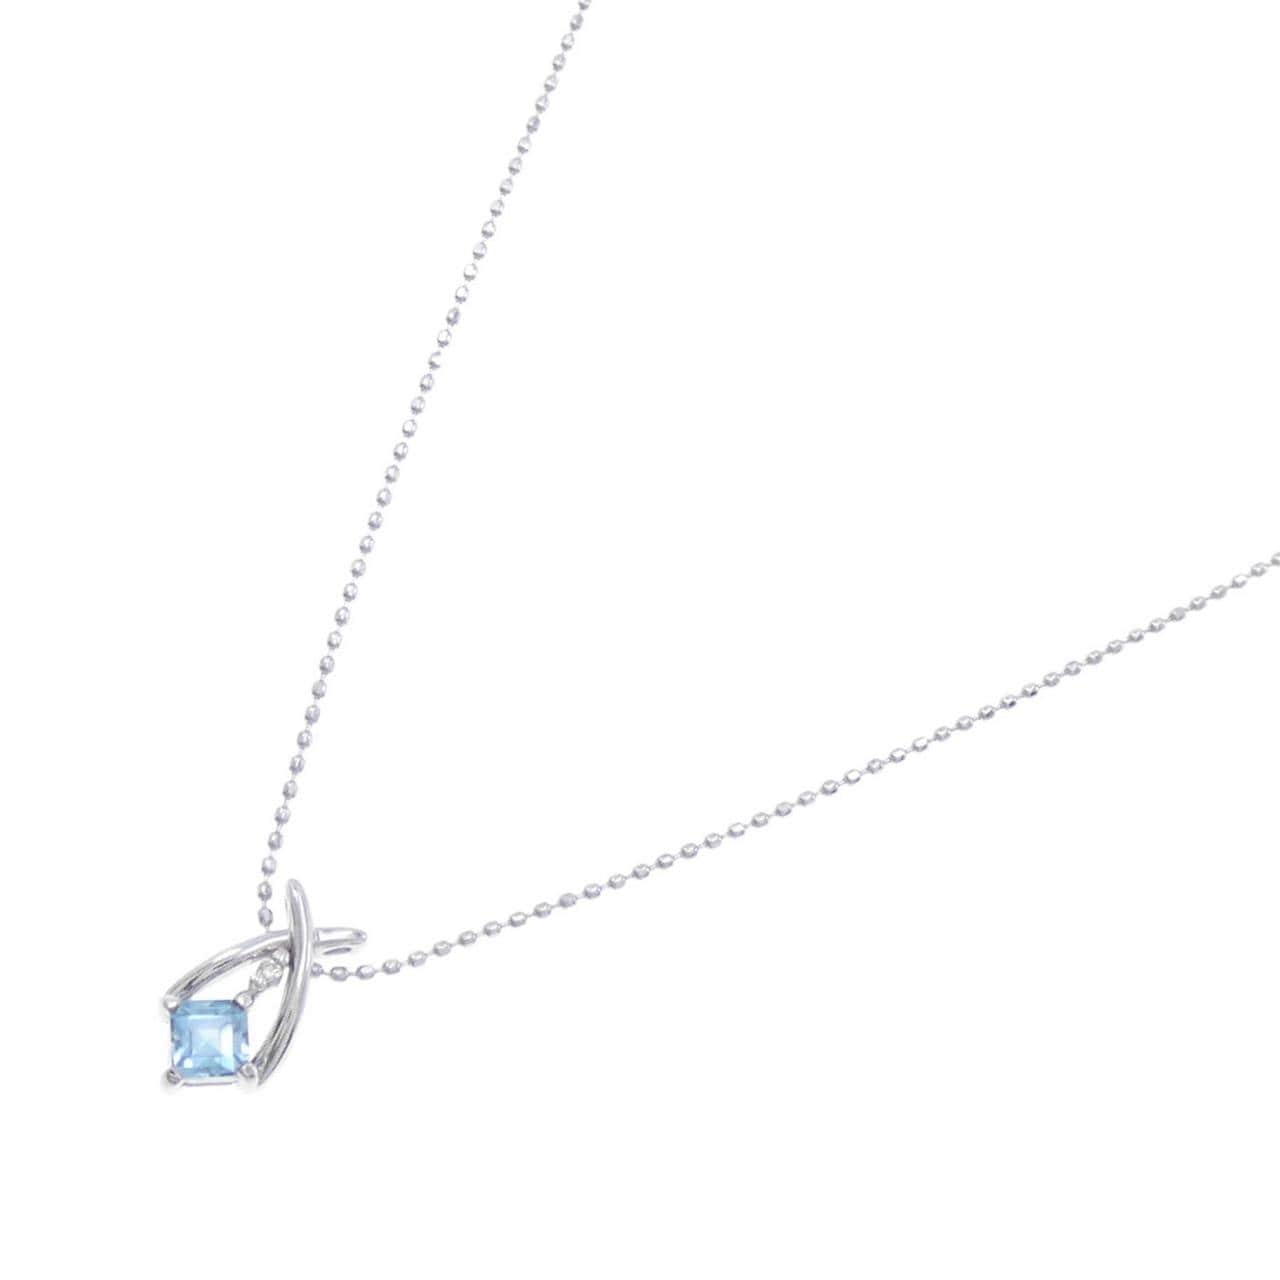 K18WG blue Topaz necklace